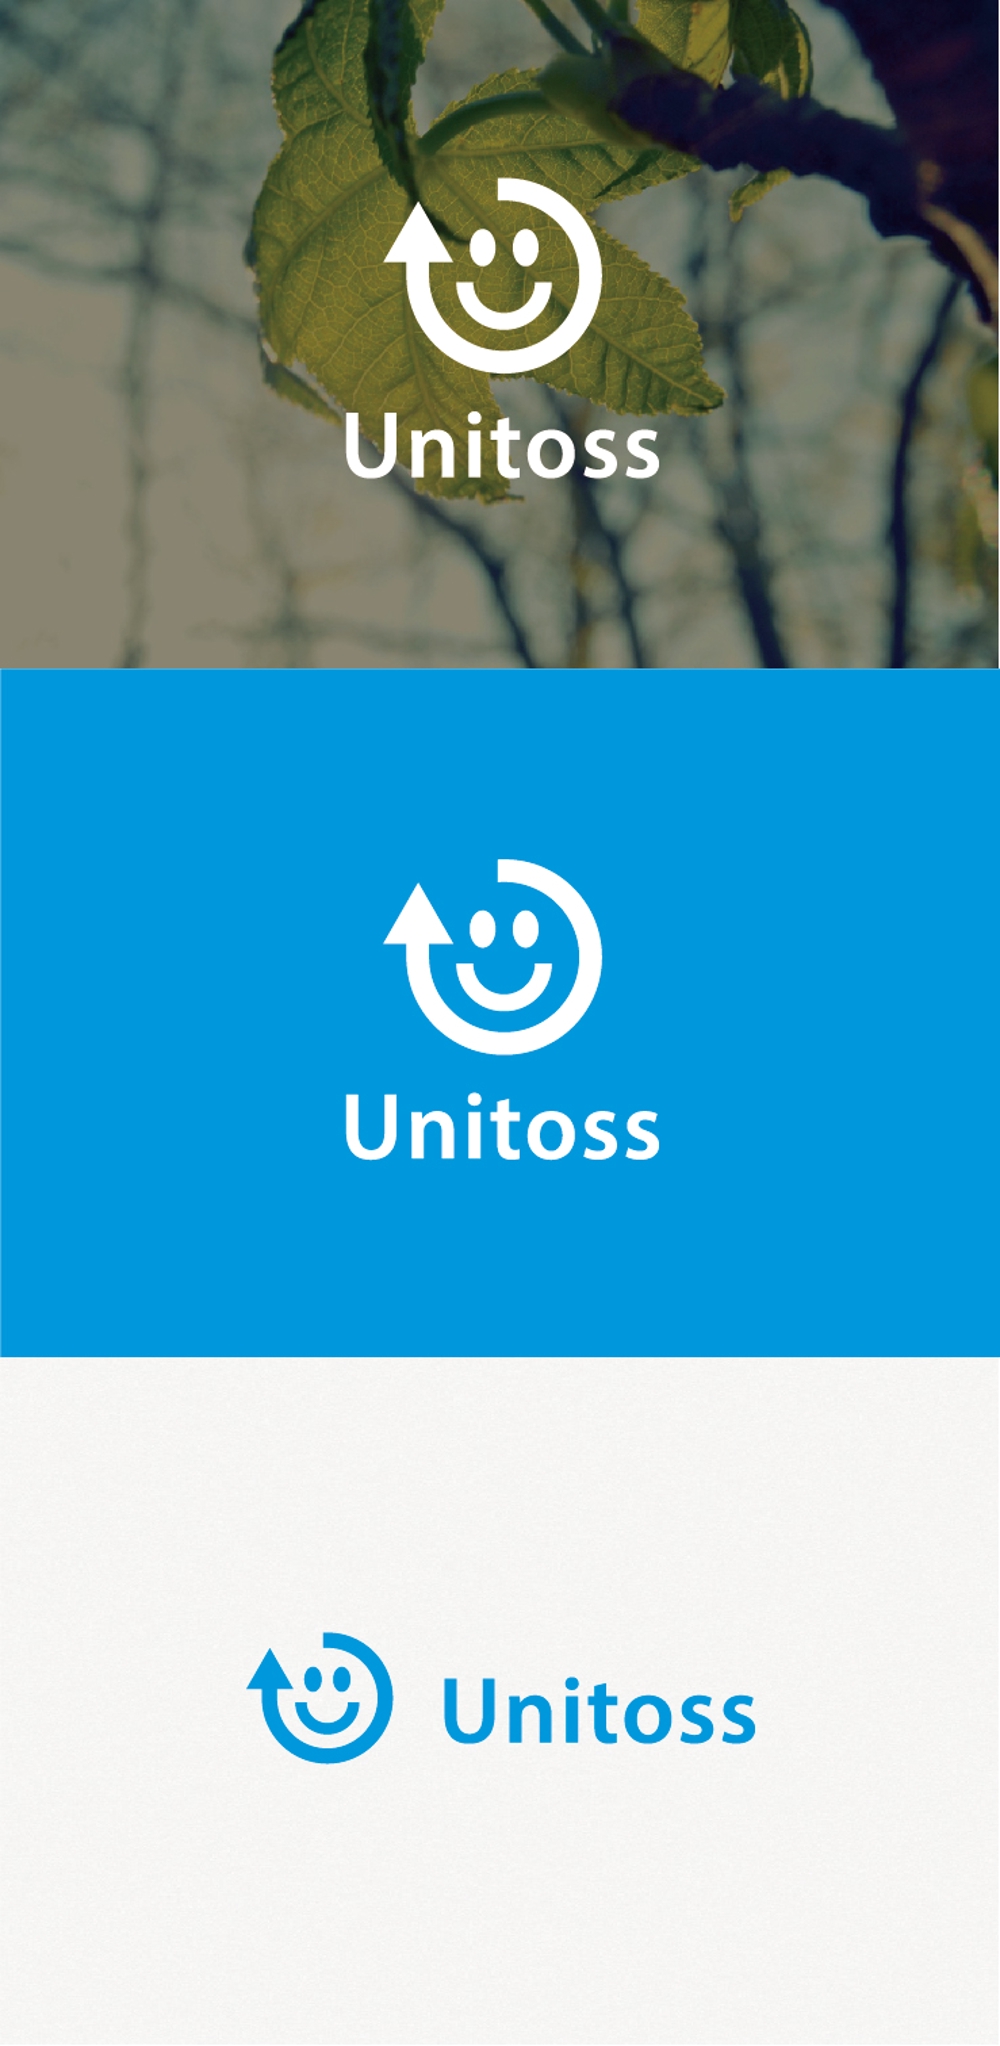 学校制服のリサイクルショップ「Unitoss」のロゴ